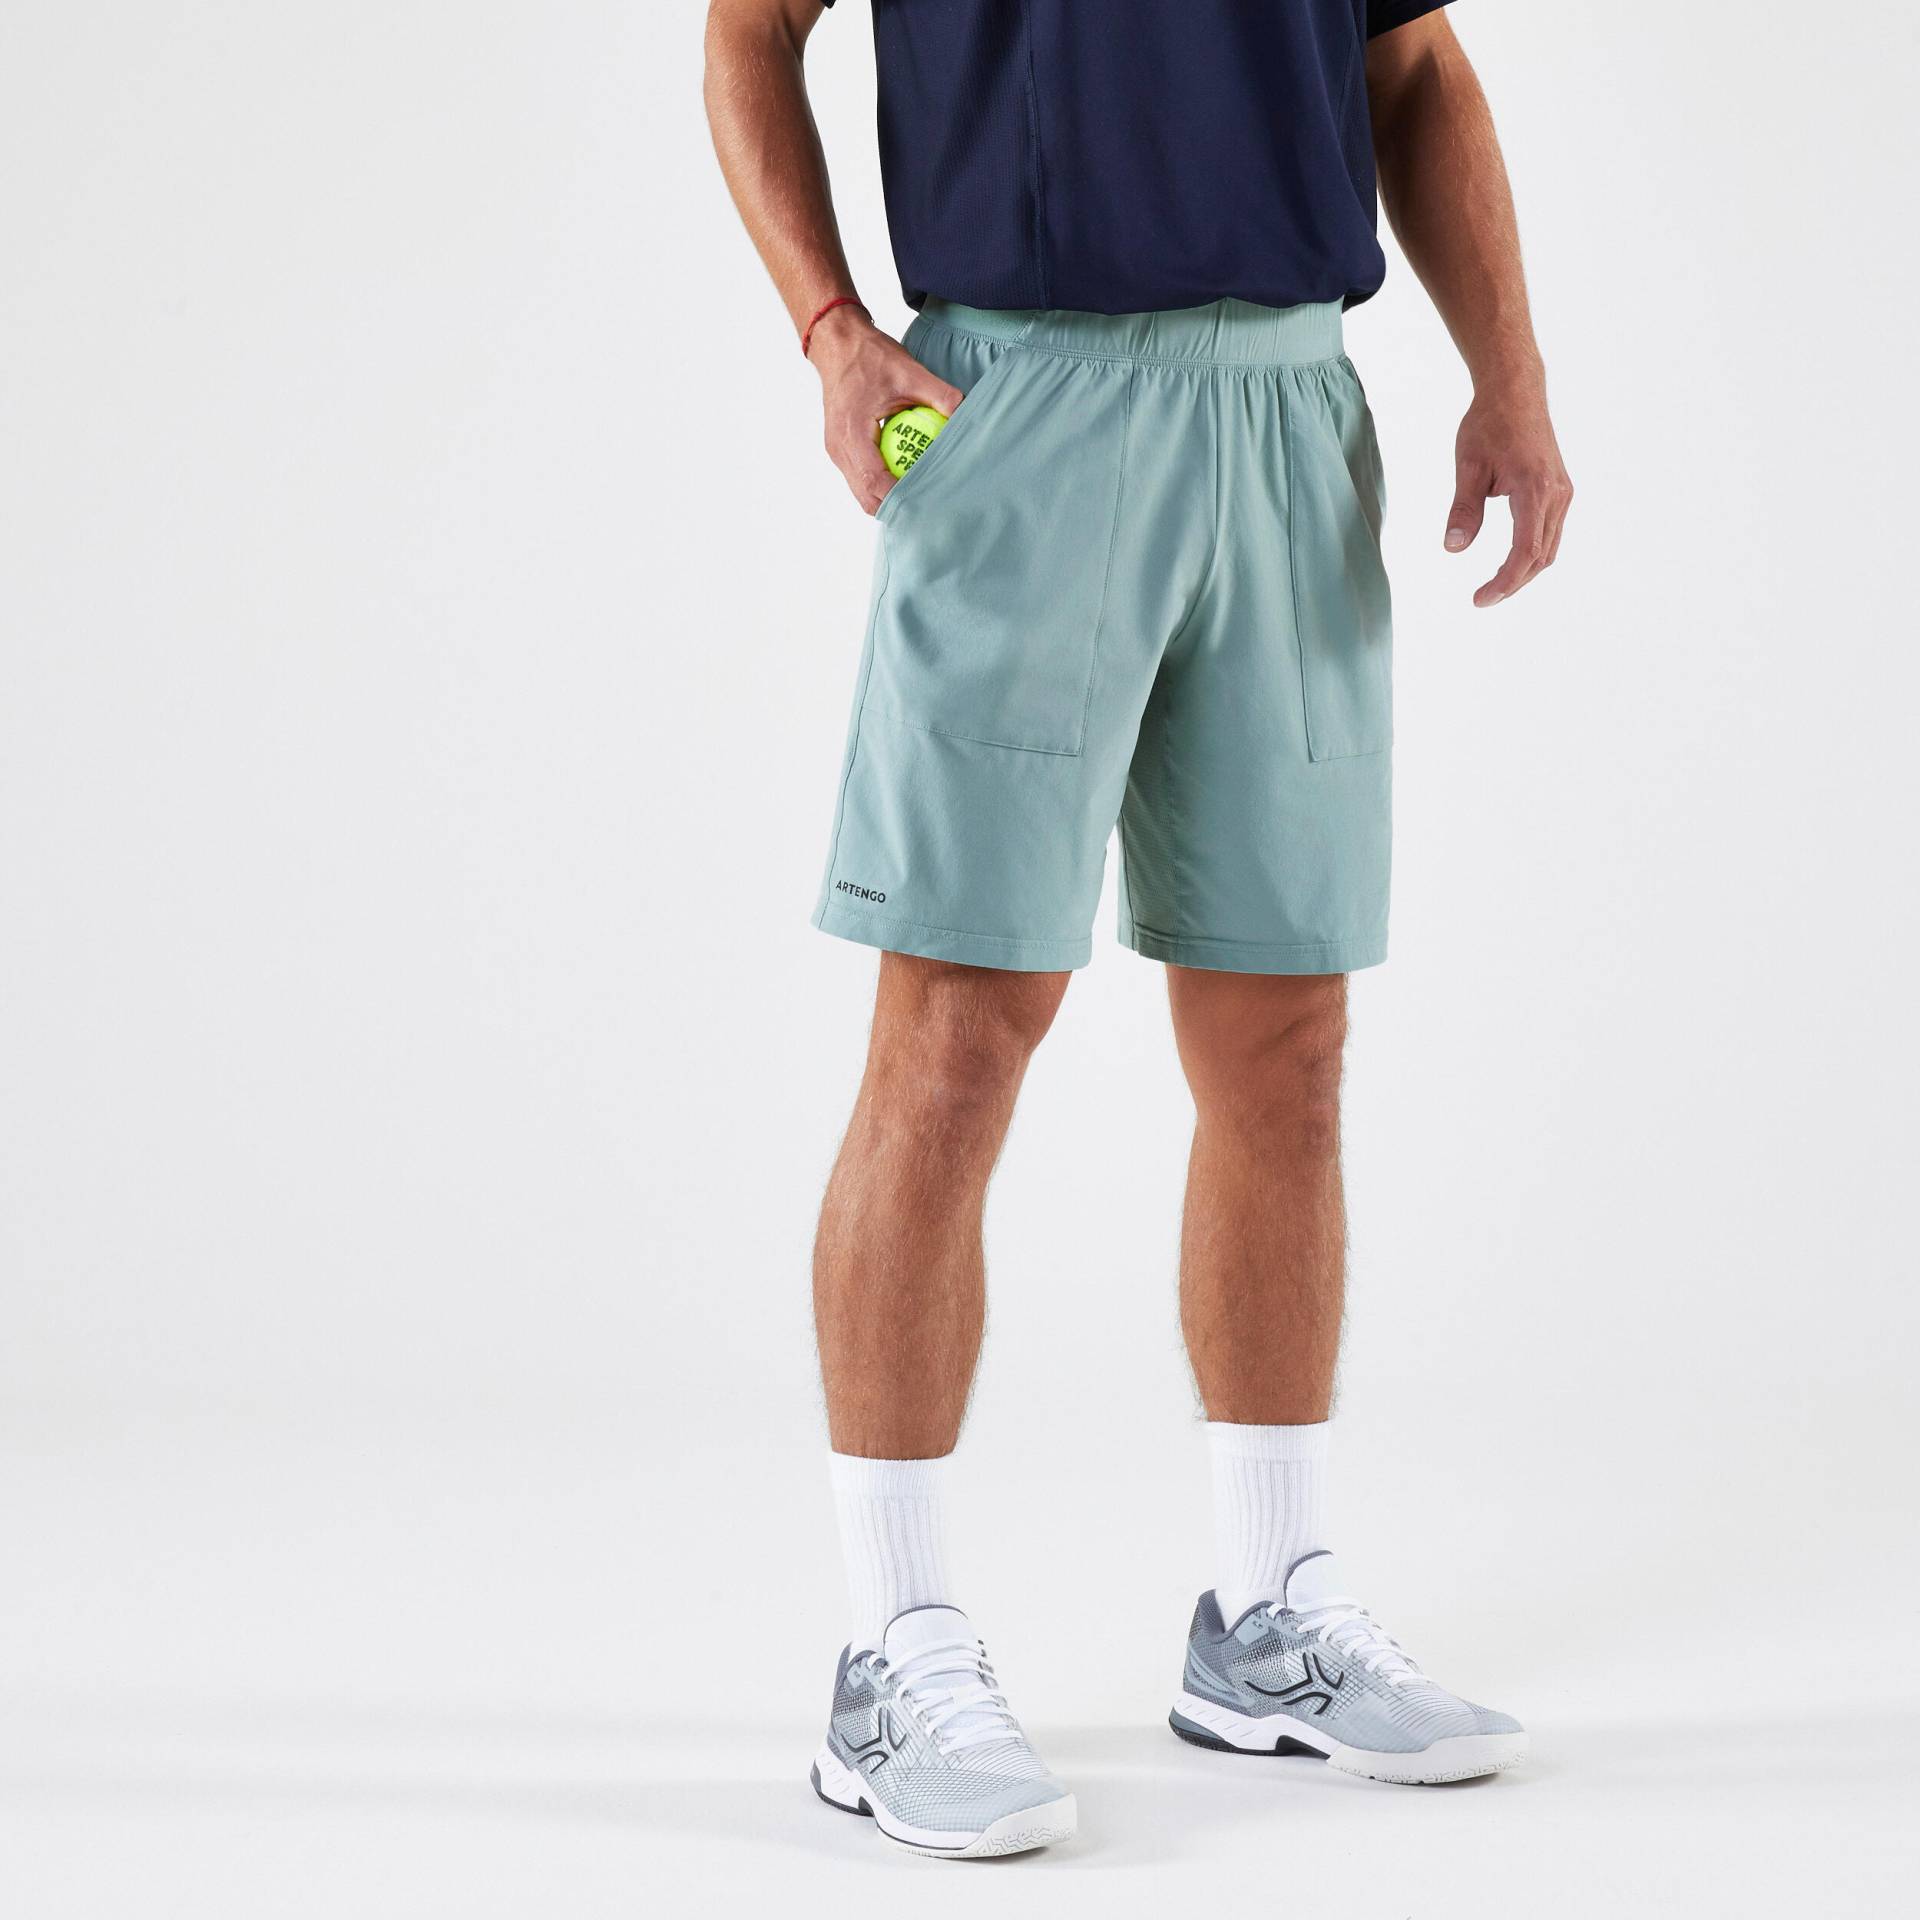 Herren Tennisshorts atmungsaktiv - Dry graugrün von ARTENGO